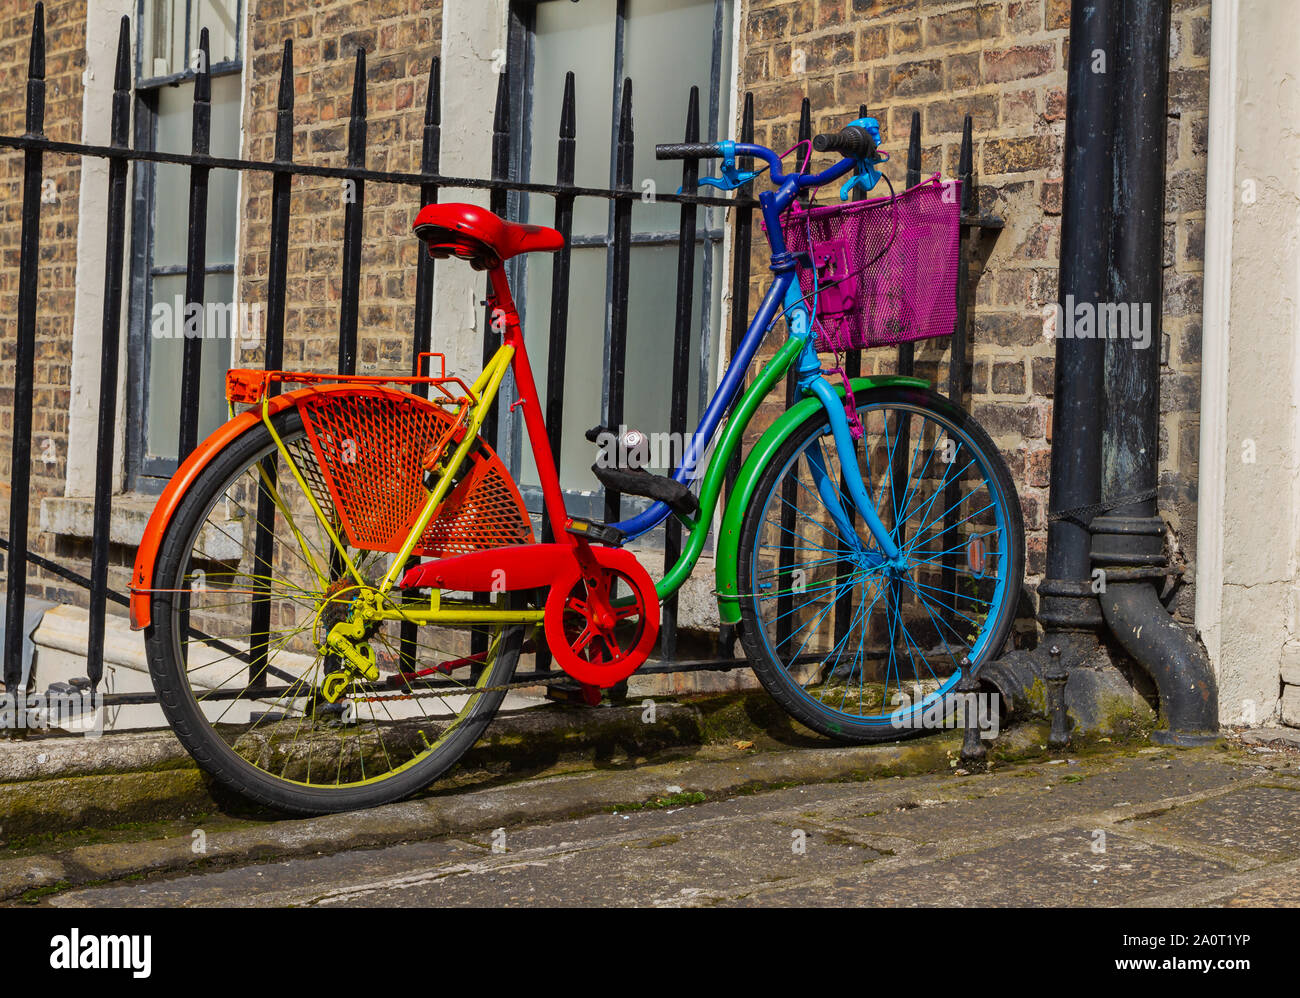 Vélo de vélo coloré aux couleurs vives et éclatantes de l'arc-en-ciel. Aux  rampes à l'extérieur du bâtiment en briques. Rouge, orange, jaune, vert,  bleu, violet indigo Photo Stock - Alamy